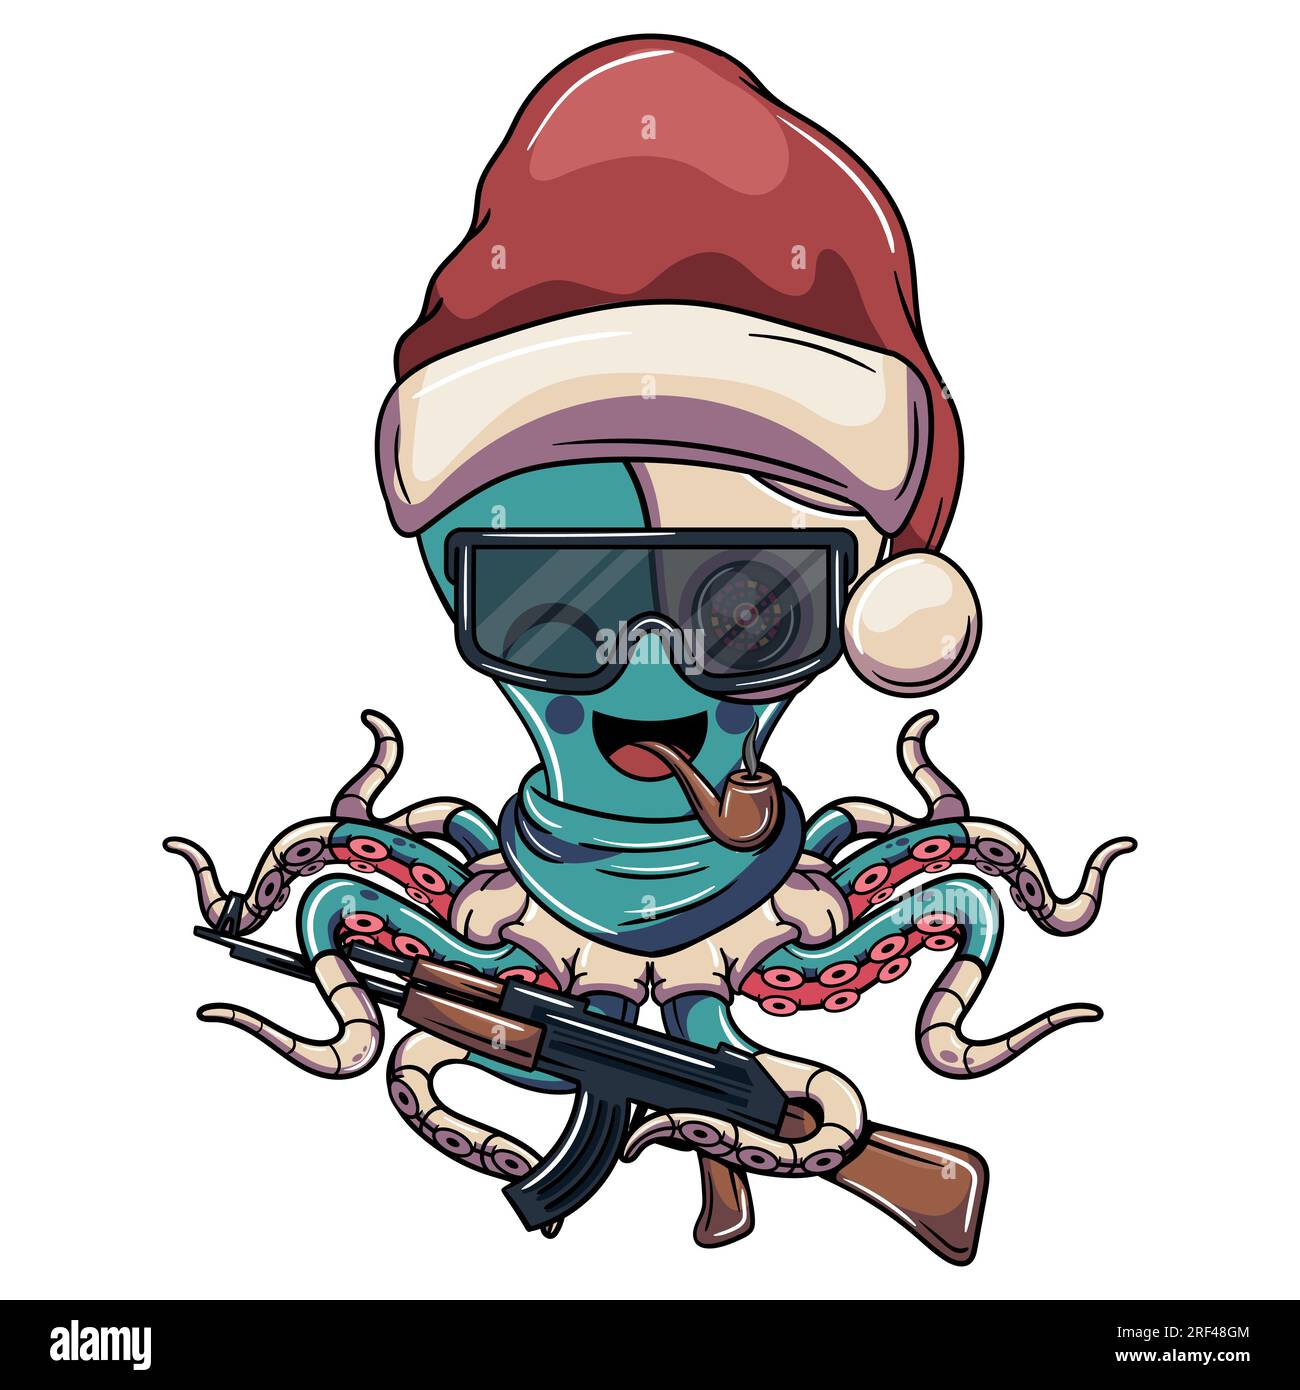 Personnage de poulpe cyborg de dessin animé portant le chapeau du père noël de noël, avec des lunettes, une pipe et un fusil de chasse. Illustration pour la fantaisie, la science-fiction et la publicité Illustration de Vecteur